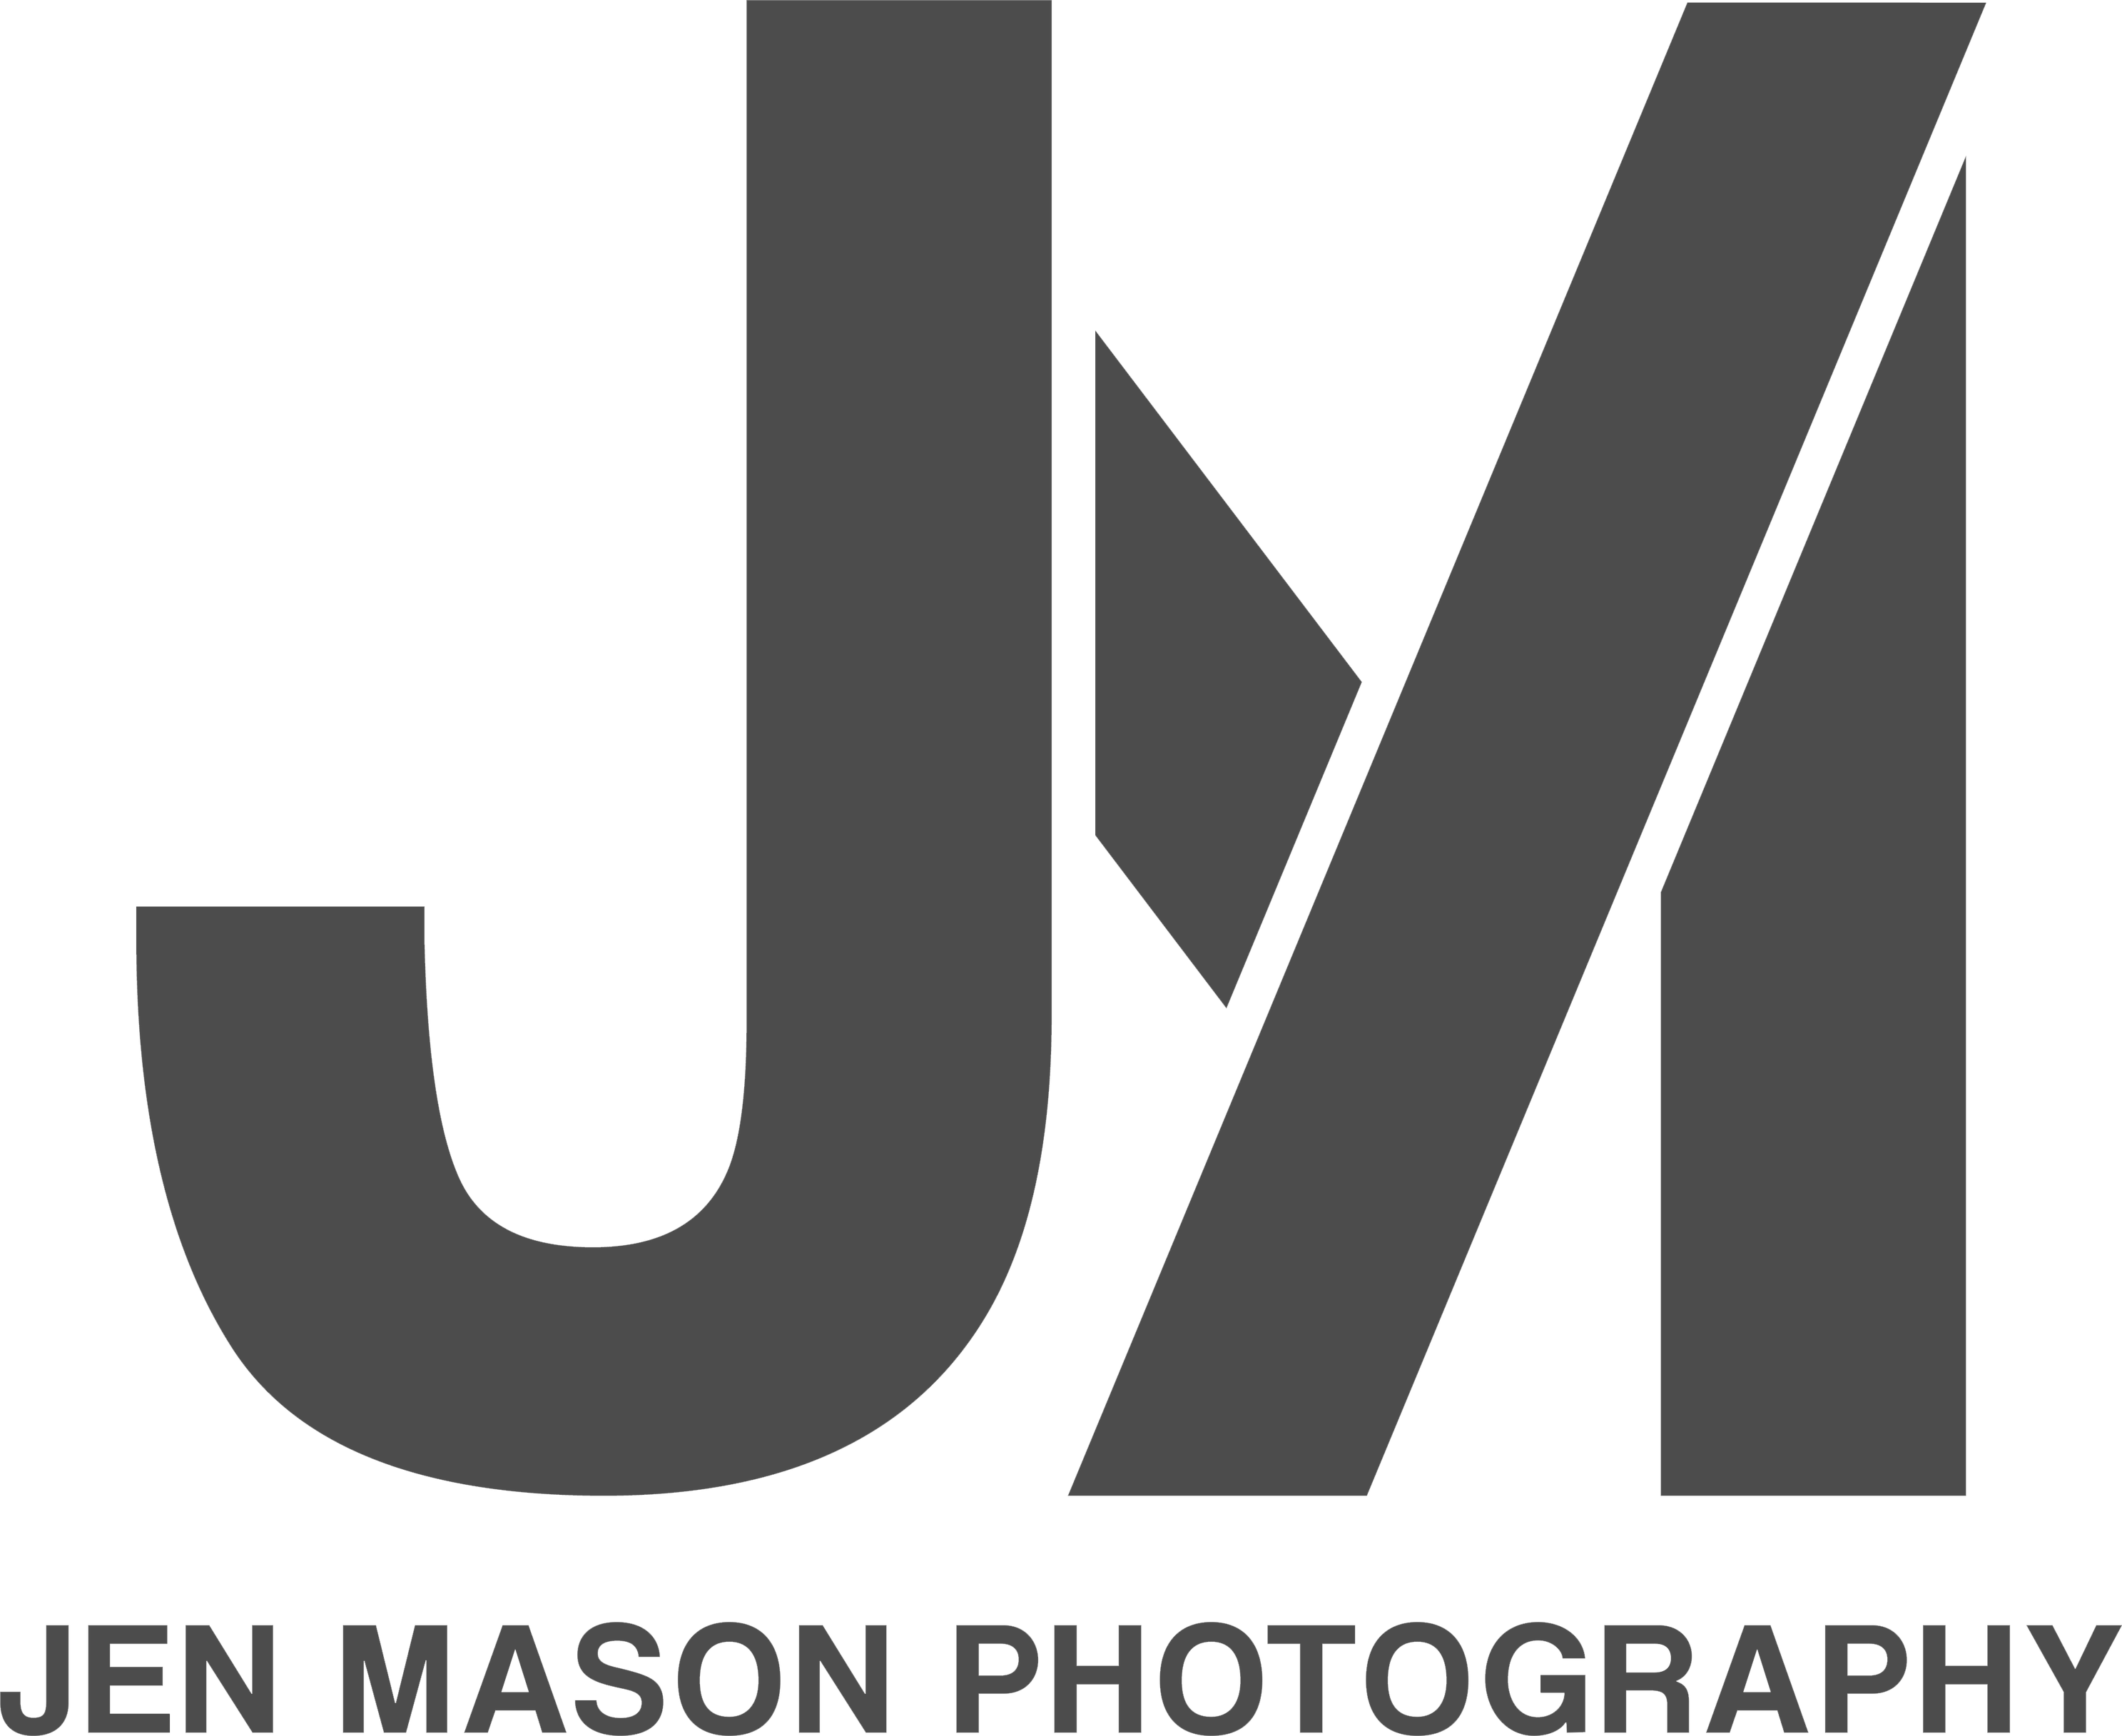 JEN MASON PHOTOGRAPHY